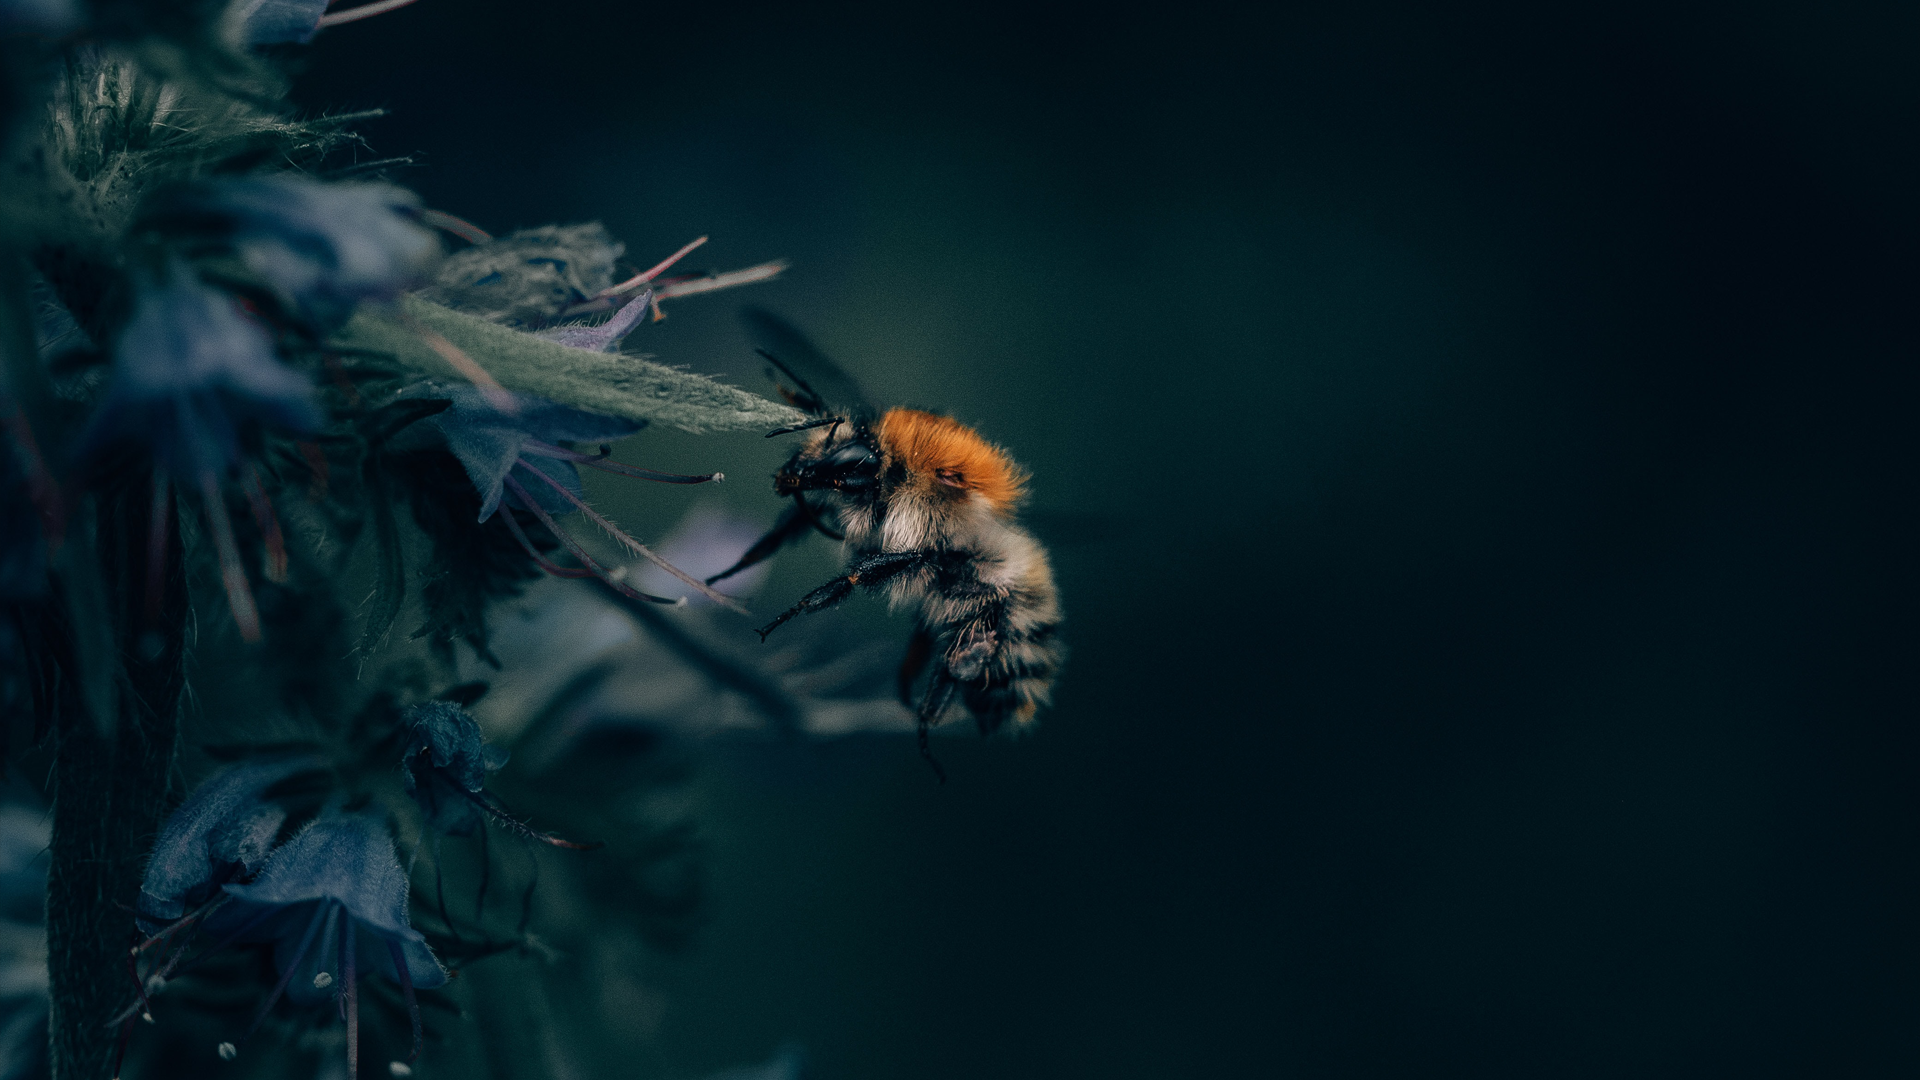 Robots lijken uitstervingsgevaar bijen op magistrale wijze tegen te gaan